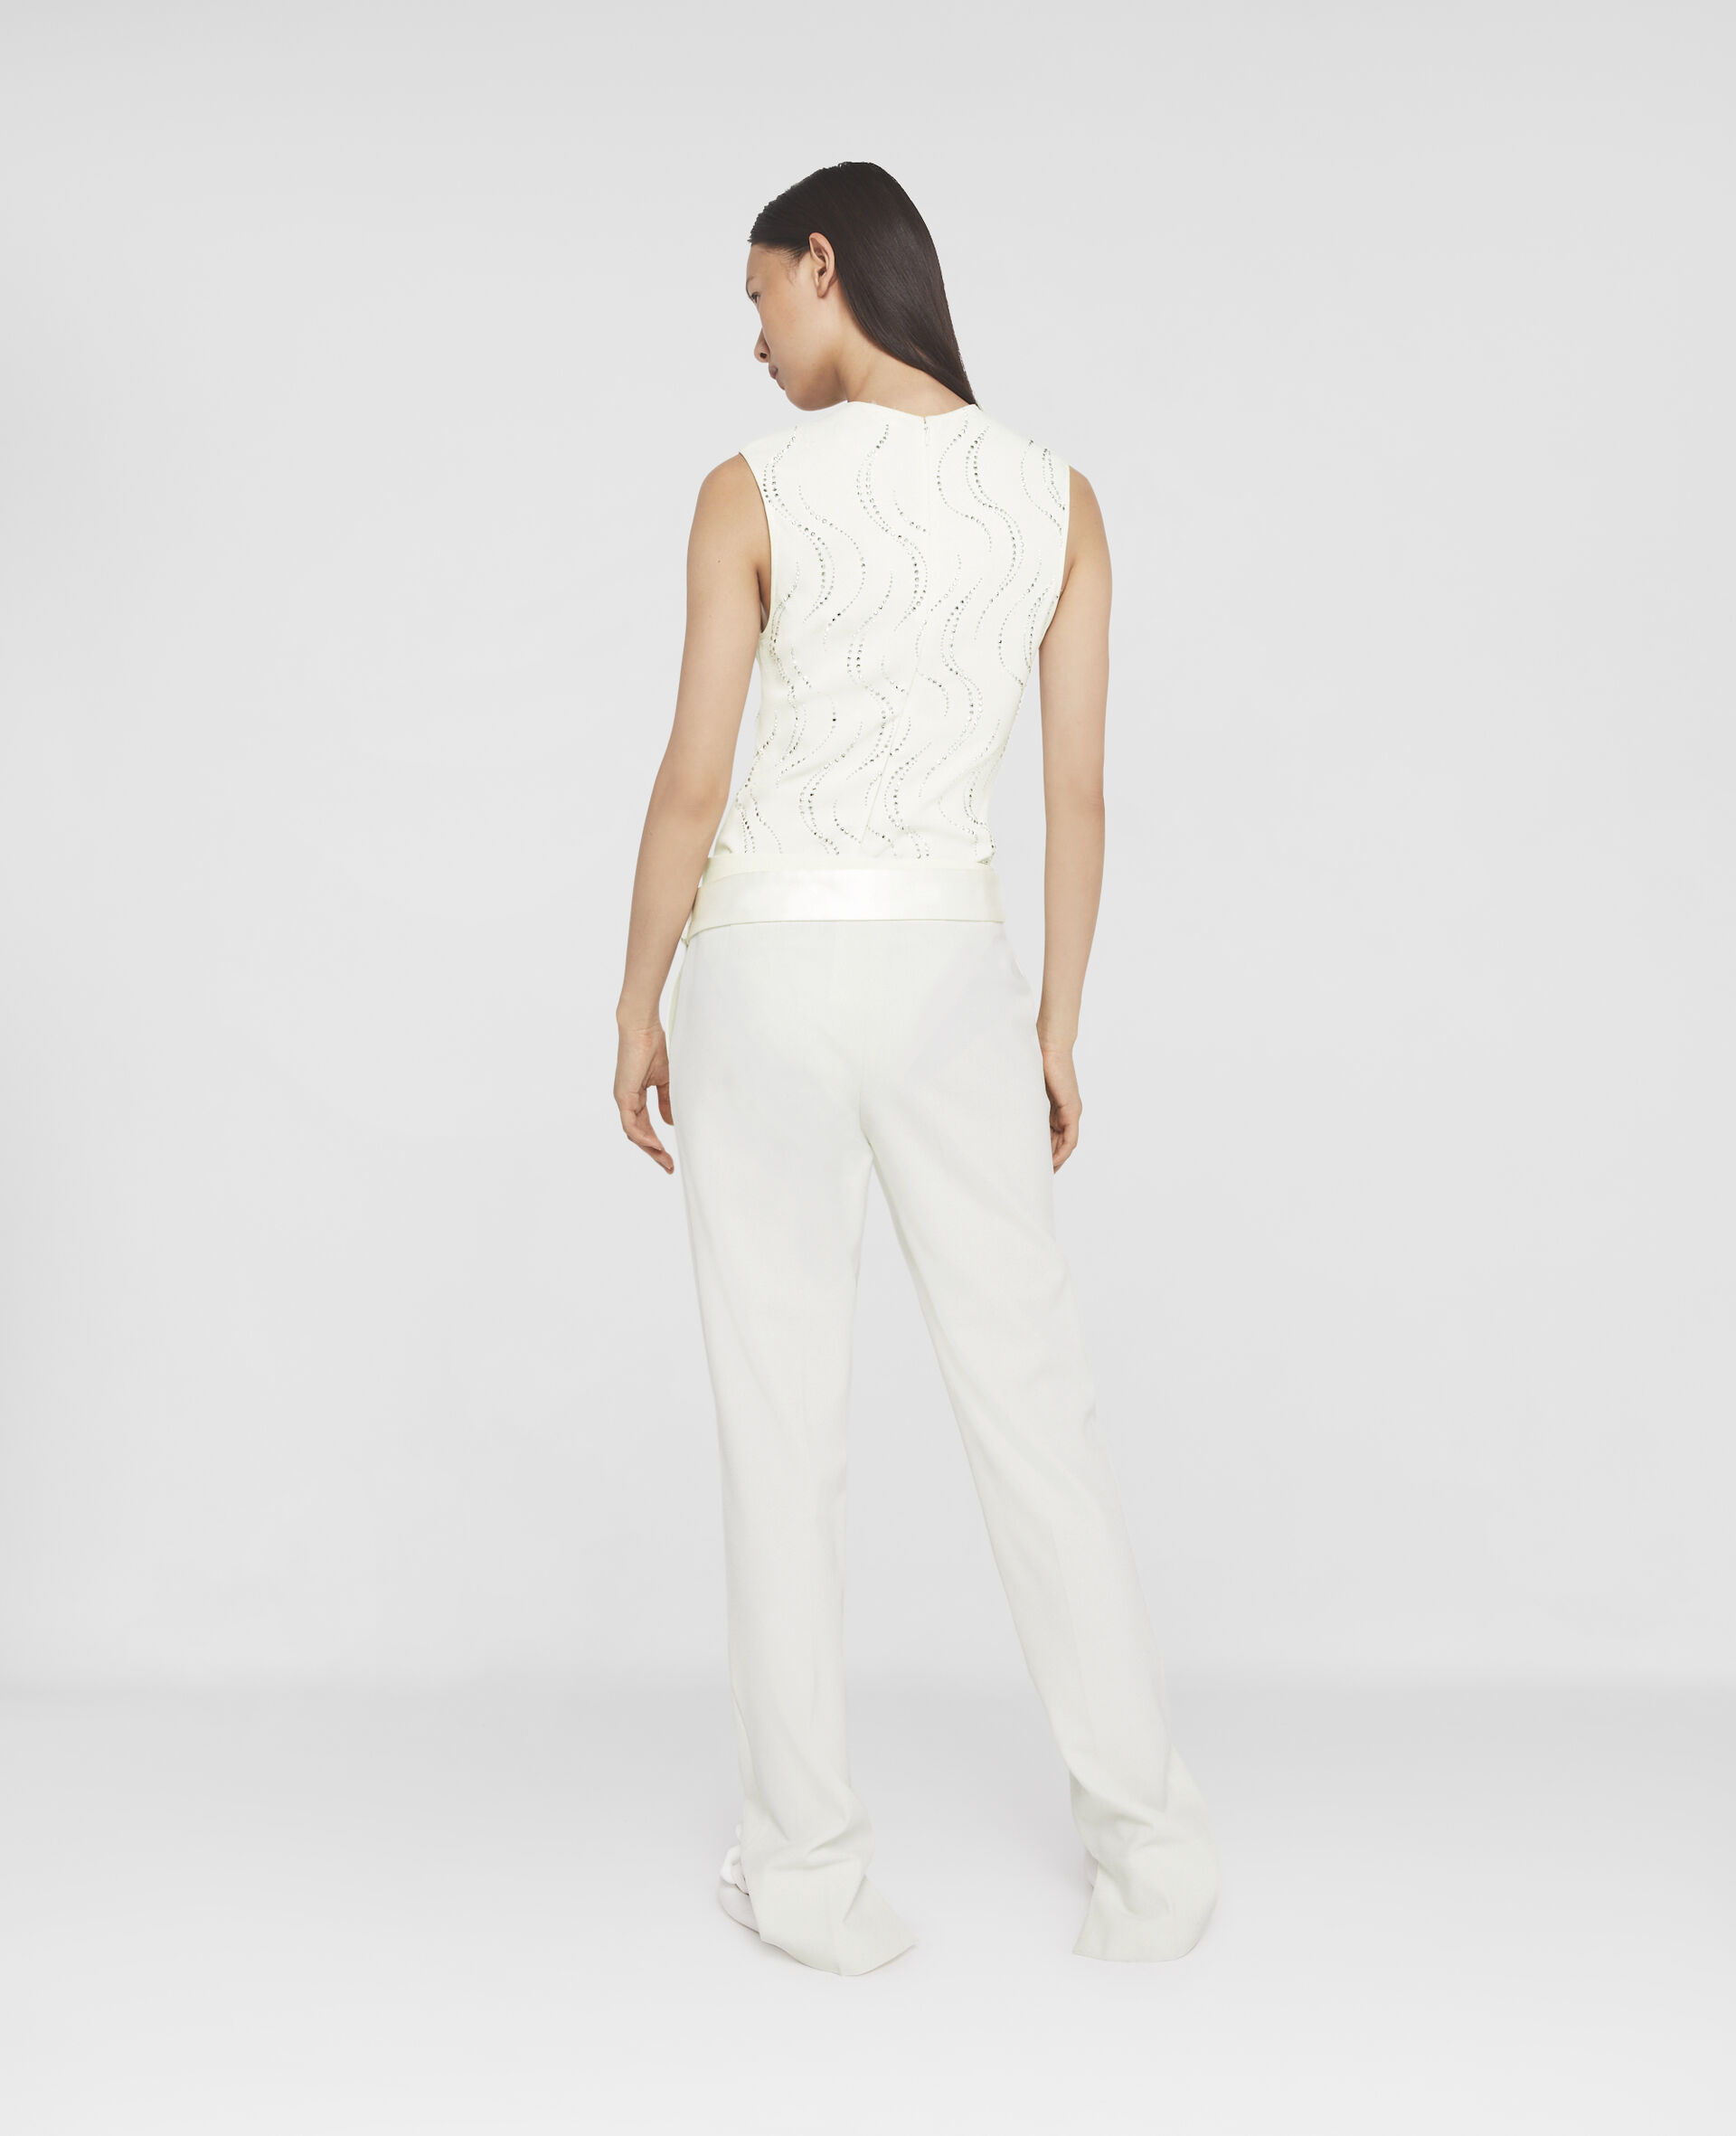 Embellished Bodysuit-White-large image number 2